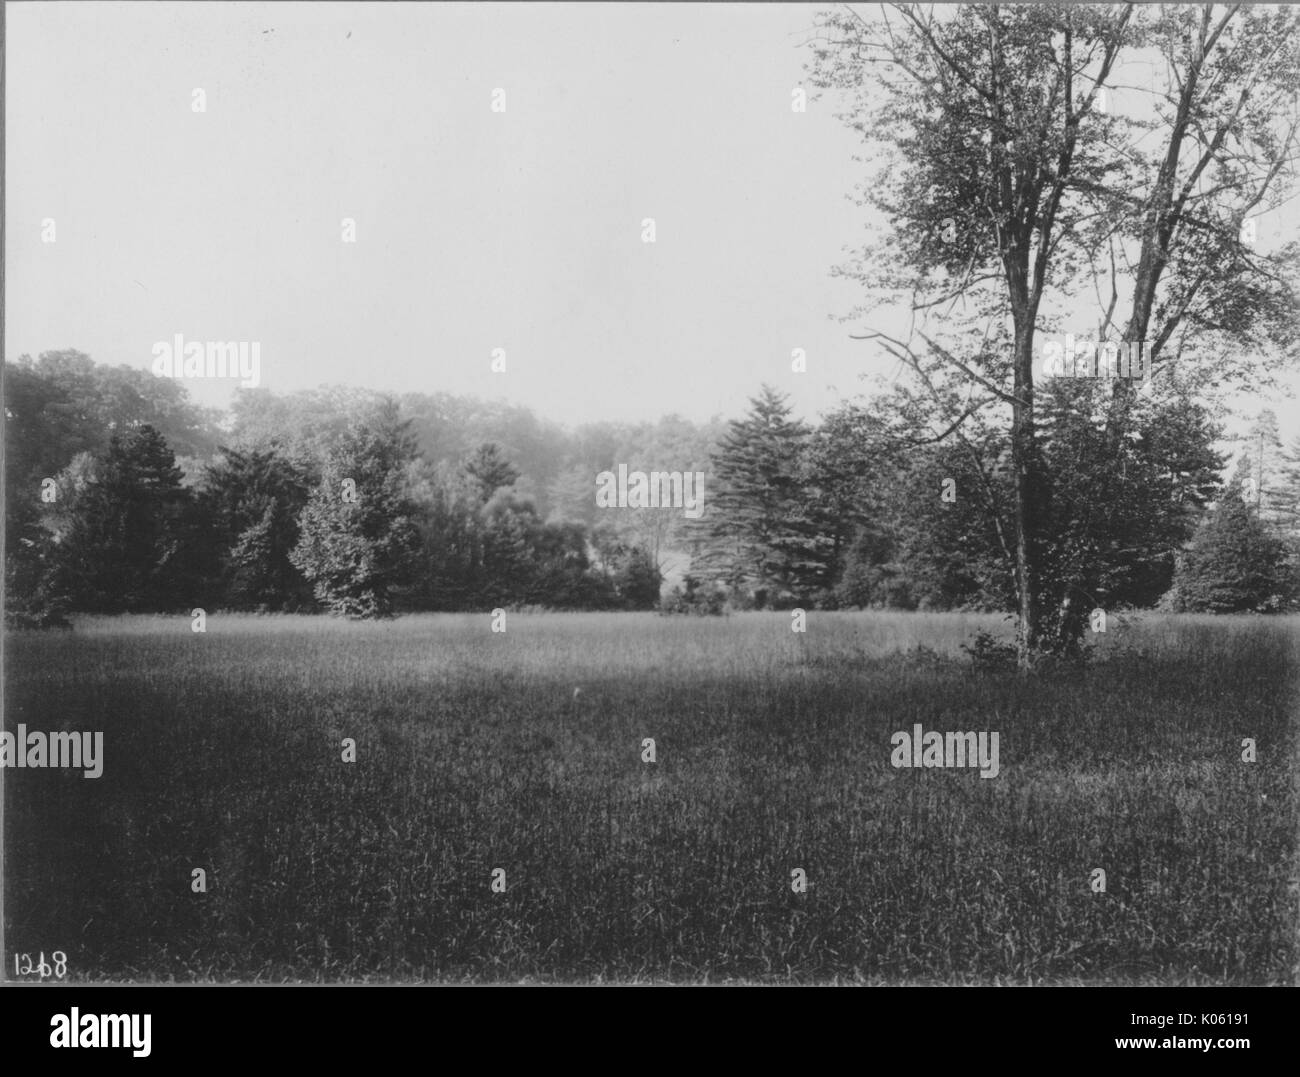 Anzeigen von unberührtem Land in der Nähe von Roland Park und Guilford, das Gras ist lang und es gibt Unkraut, Es gibt verschiedene Arten von Bäumen, die das Land in den Hintergrund, Baltimore, Maryland, 1910. Stockfoto